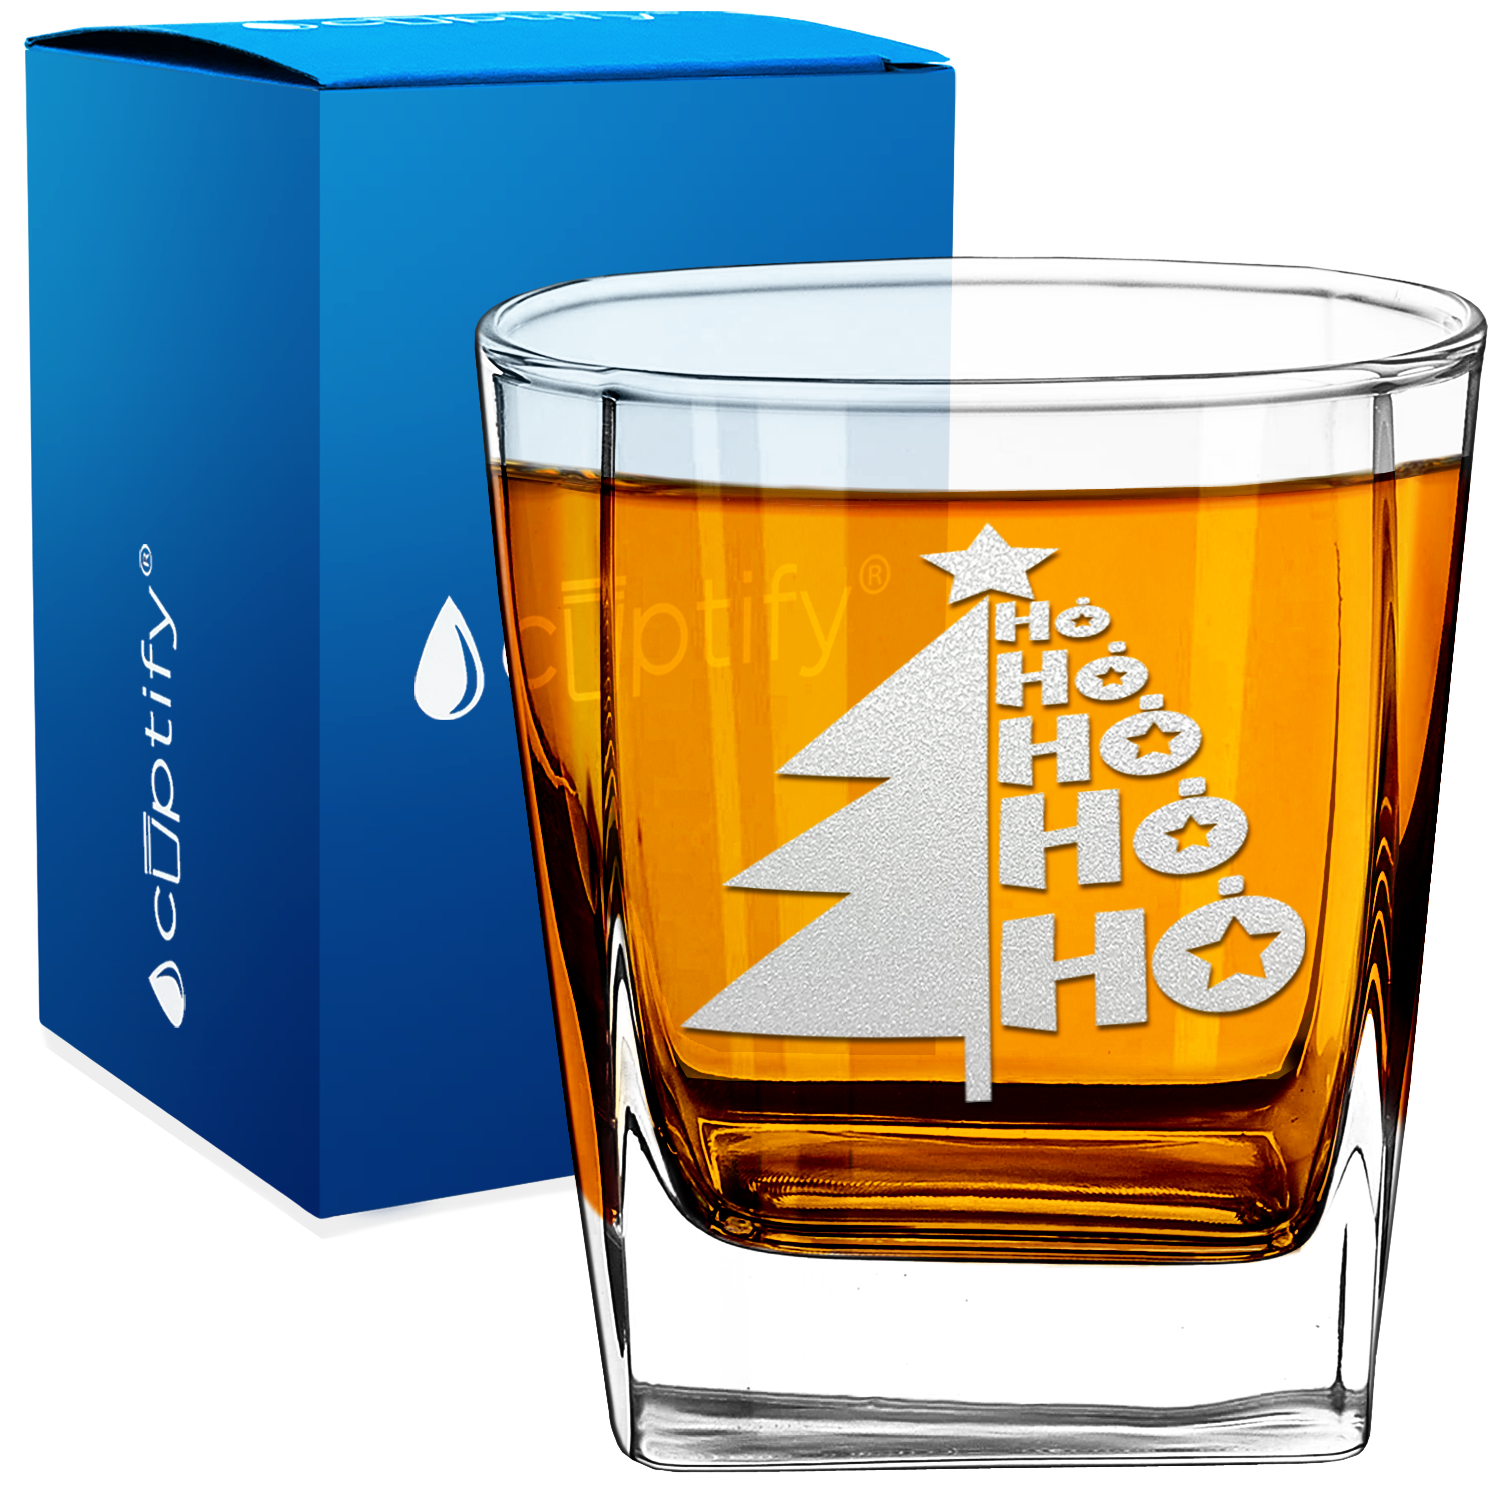 Ho Ho Ho Christmas Tree 12oz Double Old Fashioned Glass